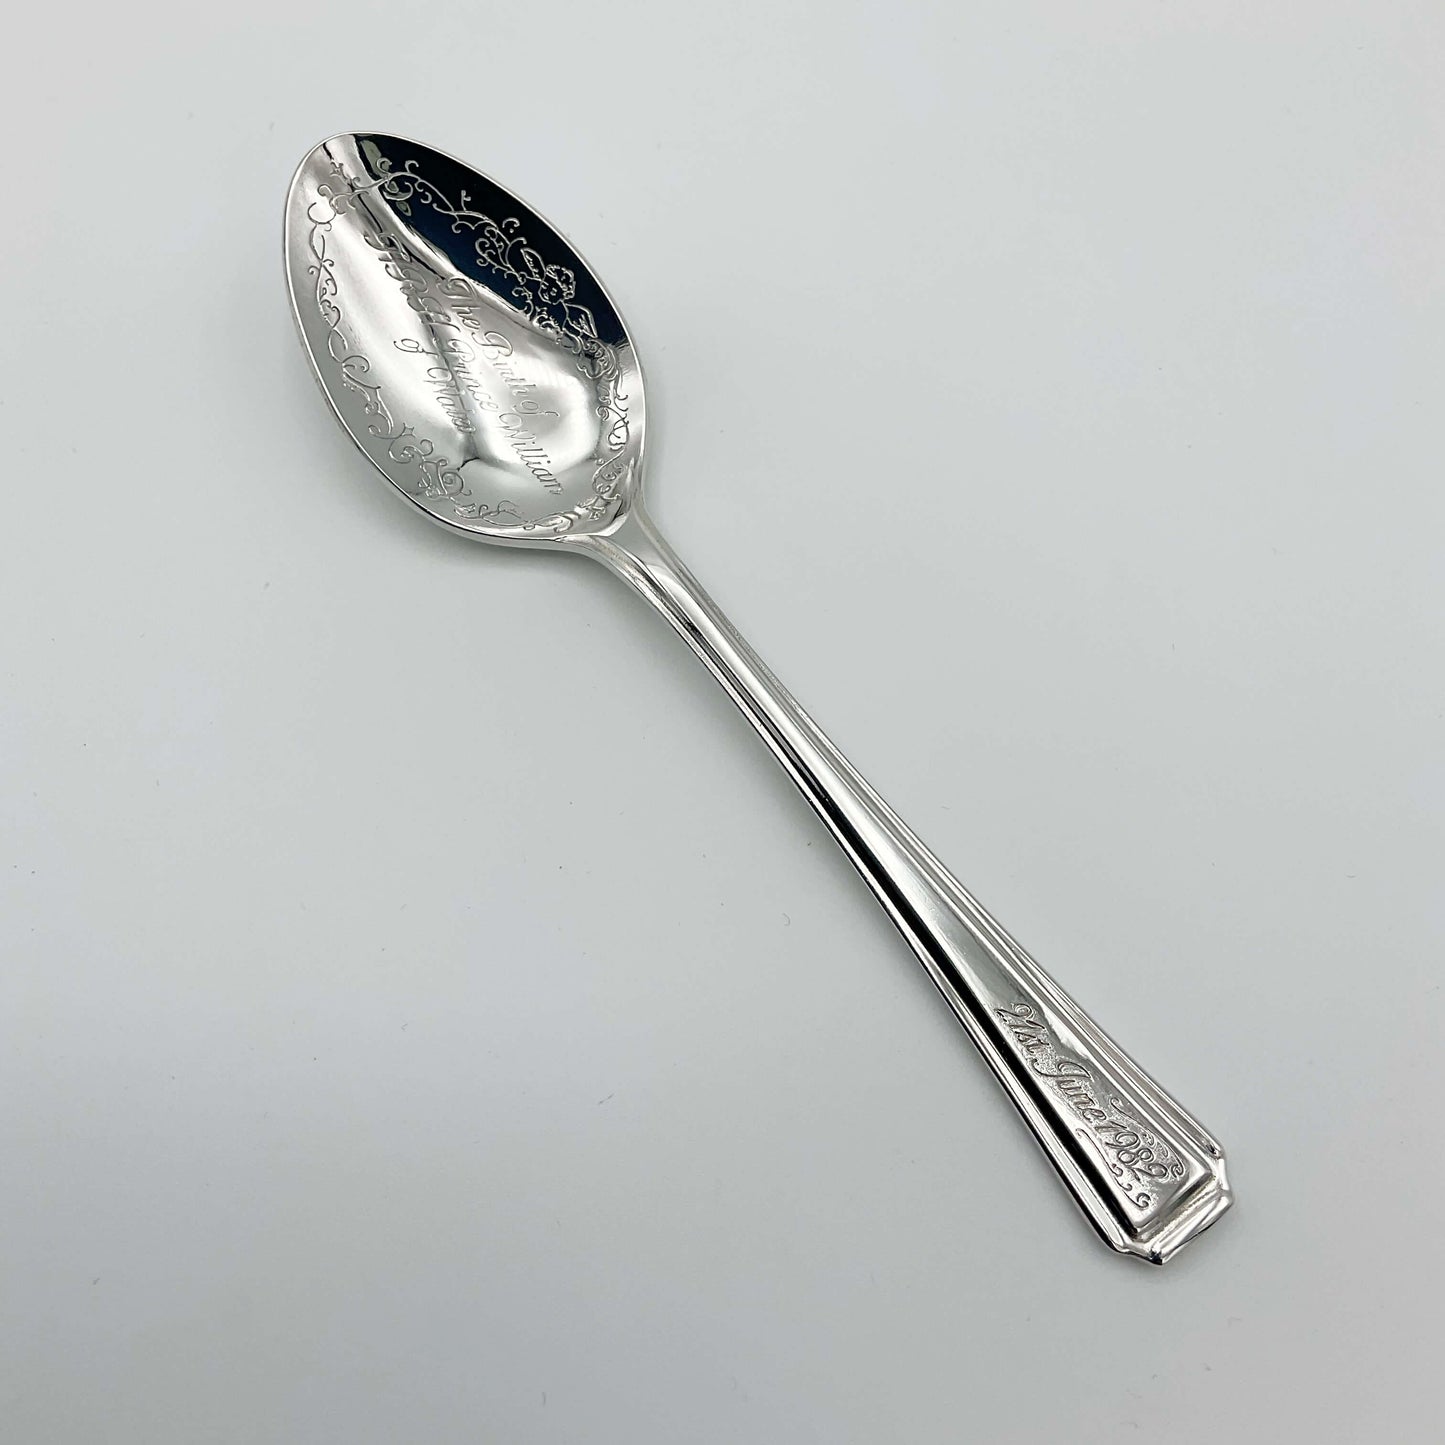 Birth of Prince William Commemorative Spoon